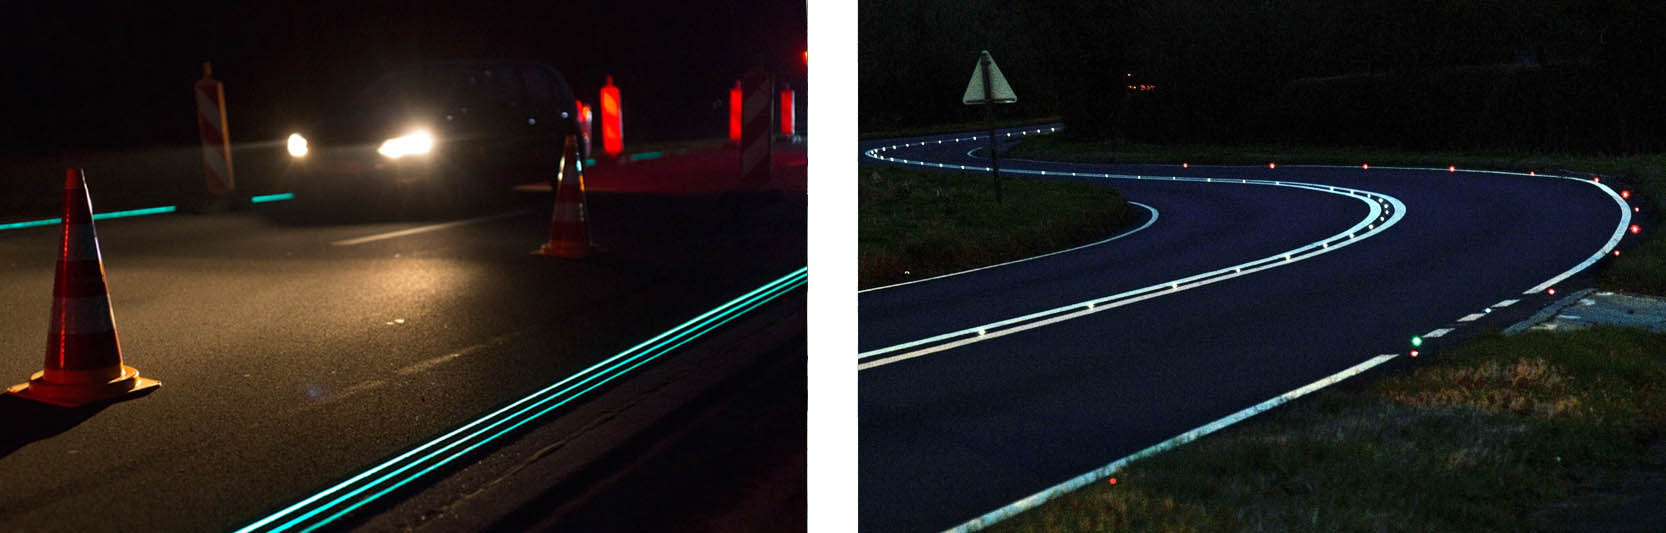 световозвращающая разметка на дорогах